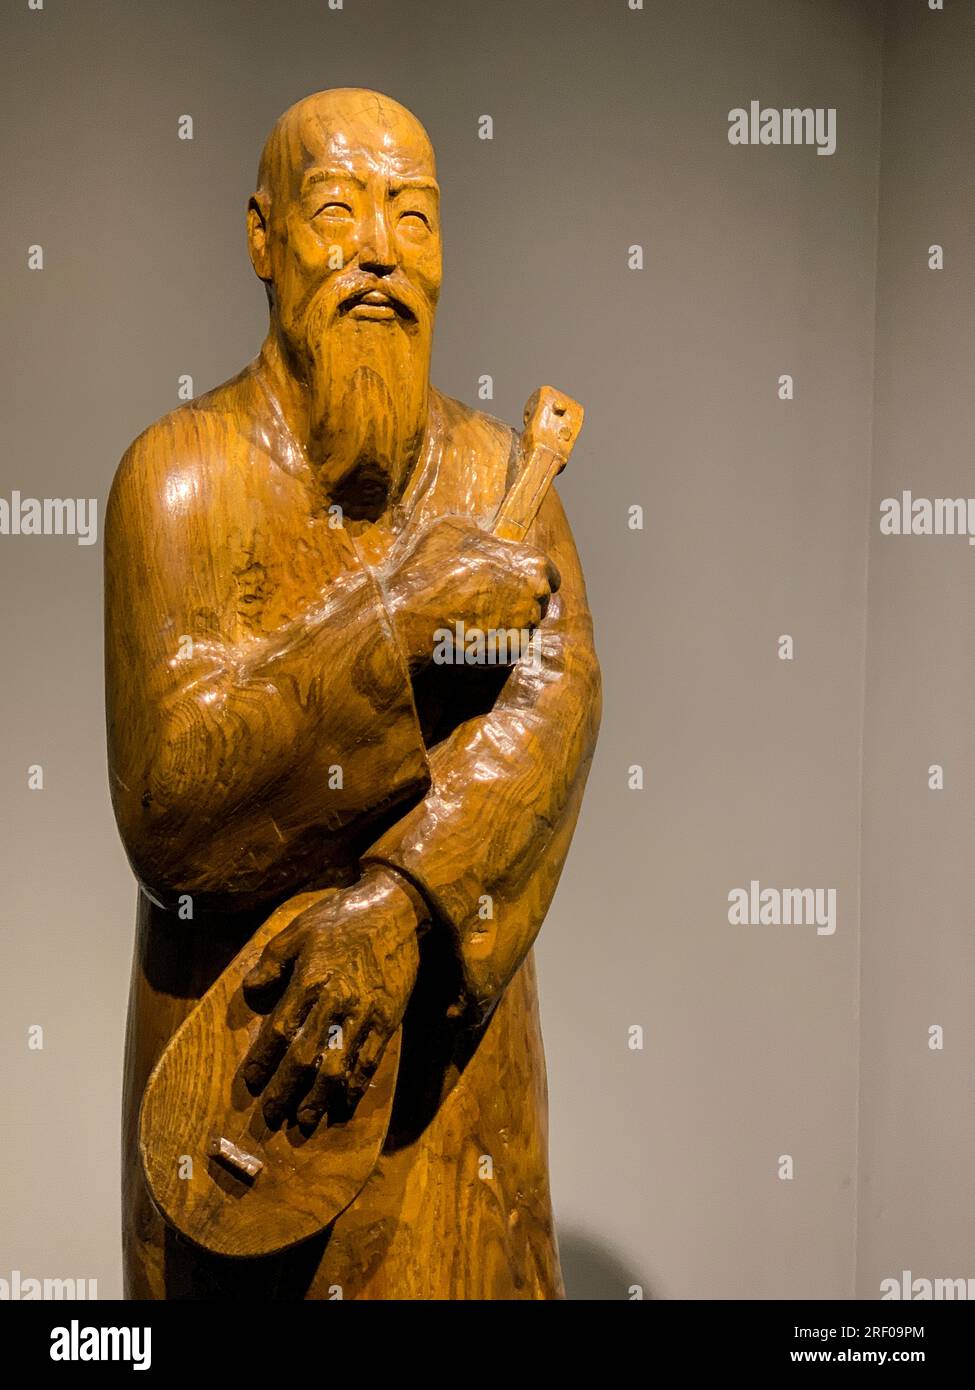 Kazakistan, Almaty. Statua di Korkyt Ata, un musicista semi-mitico e compositore del X secolo. Museo degli strumenti musicali popolari. Foto Stock